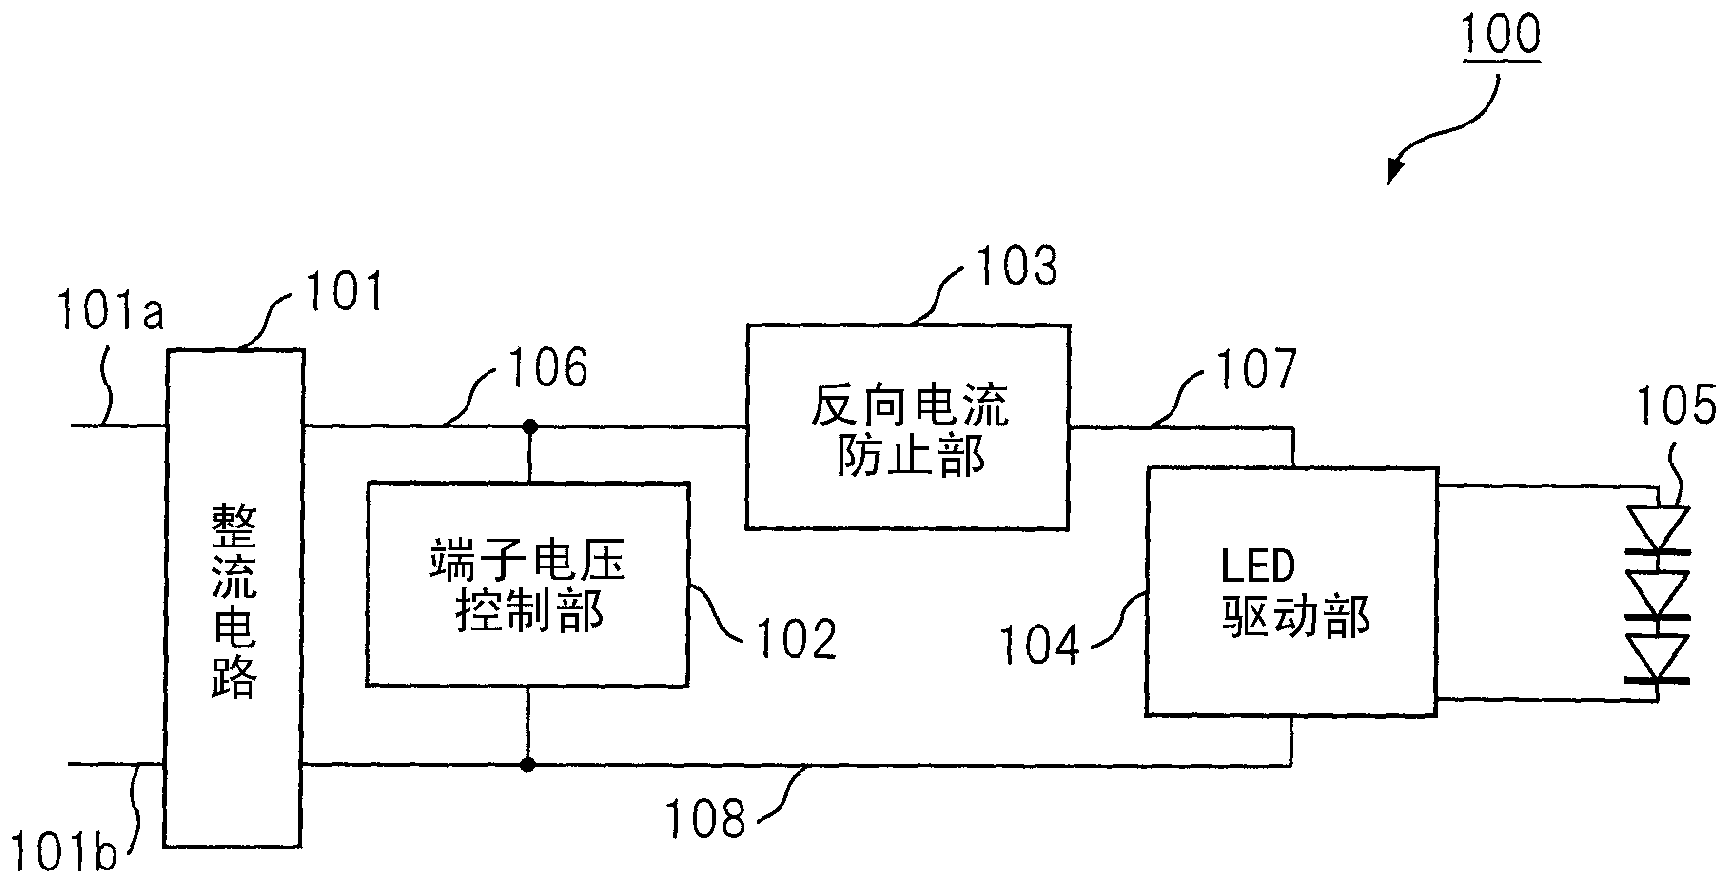 Led lighting circuit, led illuminating device, and socket for led illuminating unit